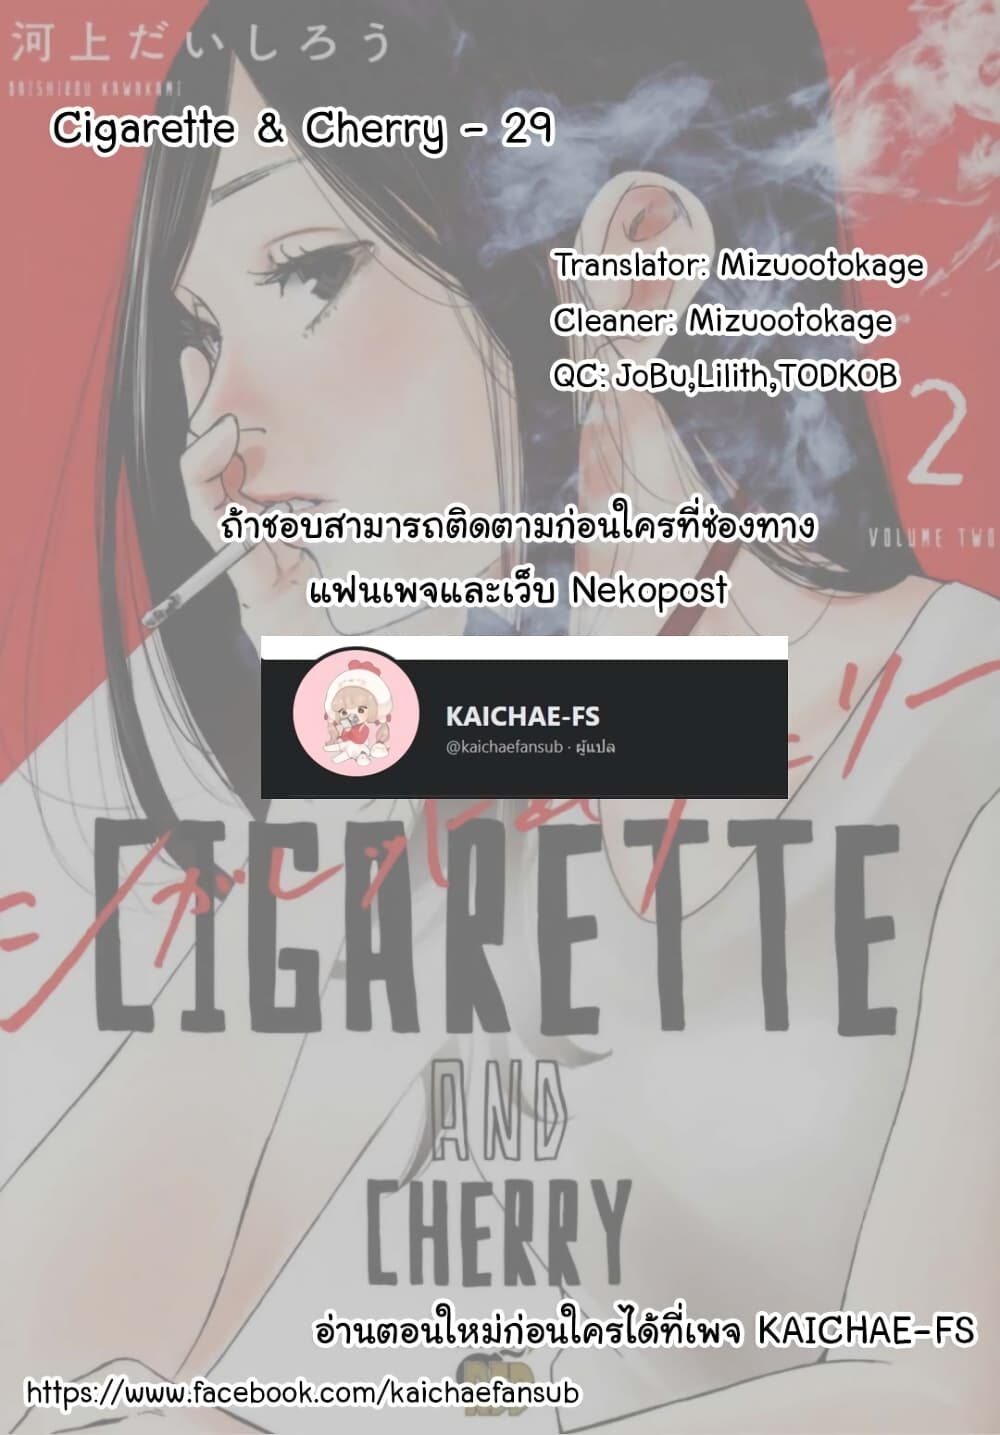 Cigarette & Cherry 29 (15)